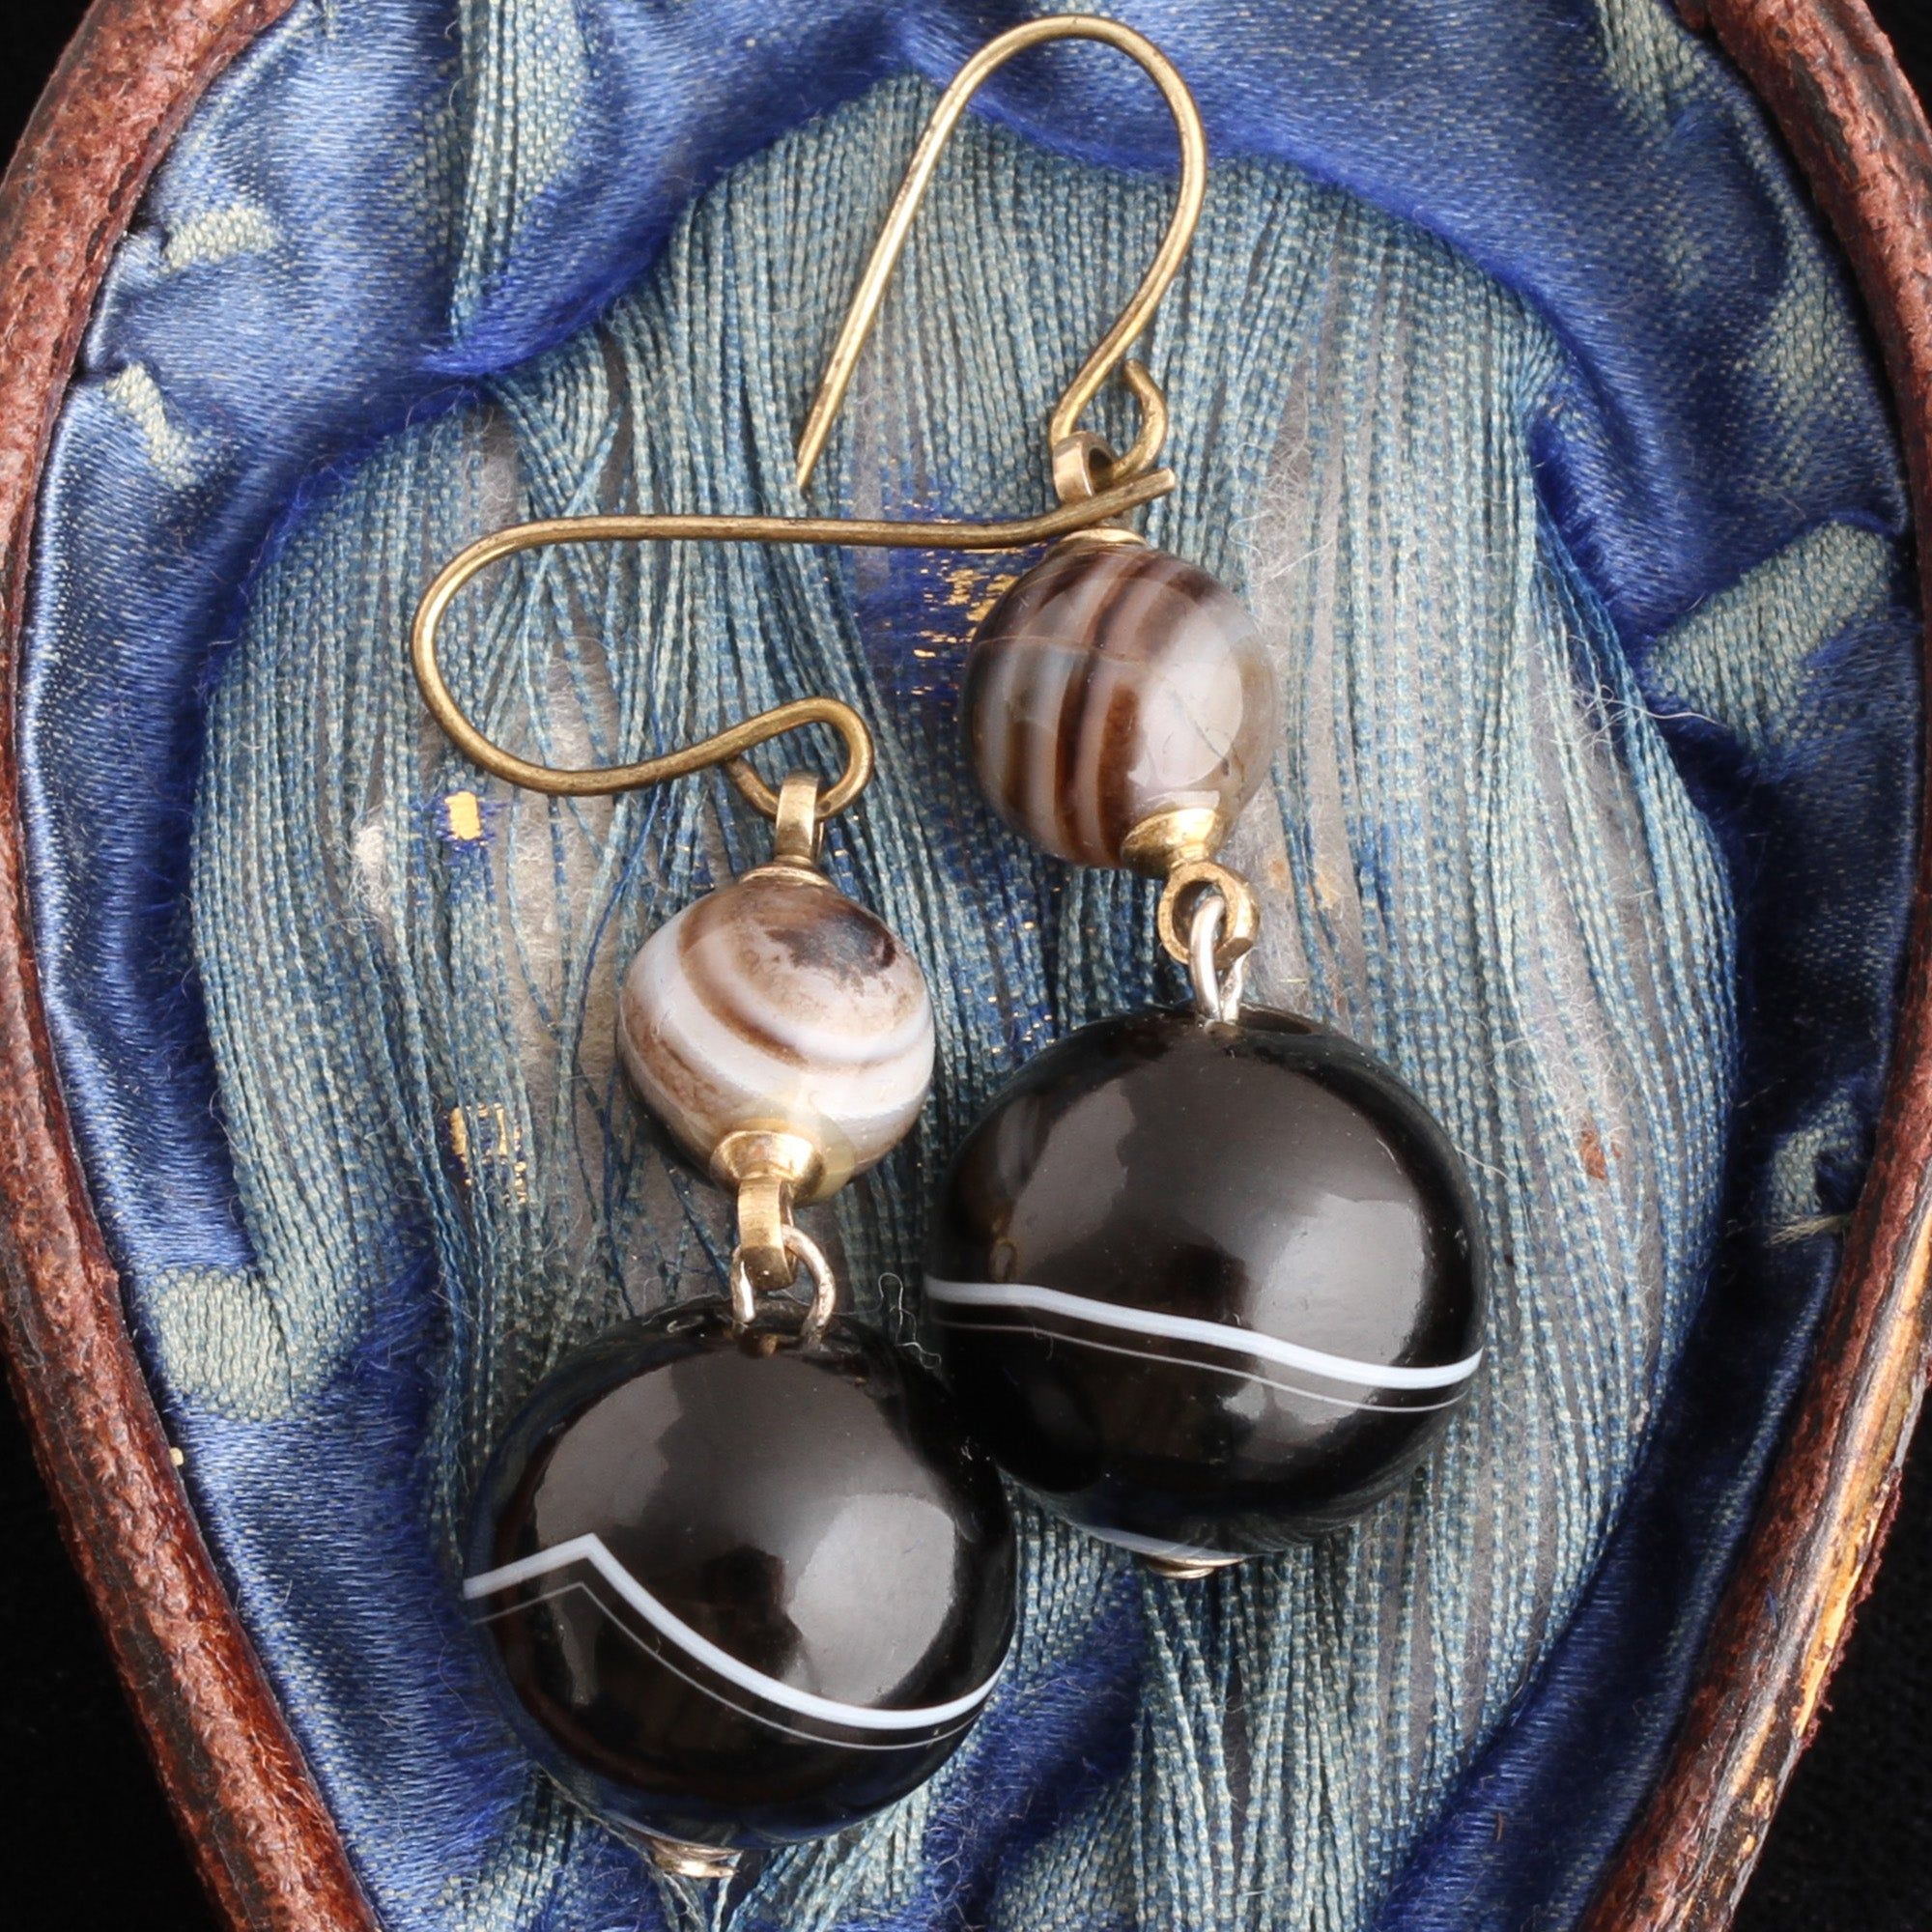 Victorian Agate Drop Earrings